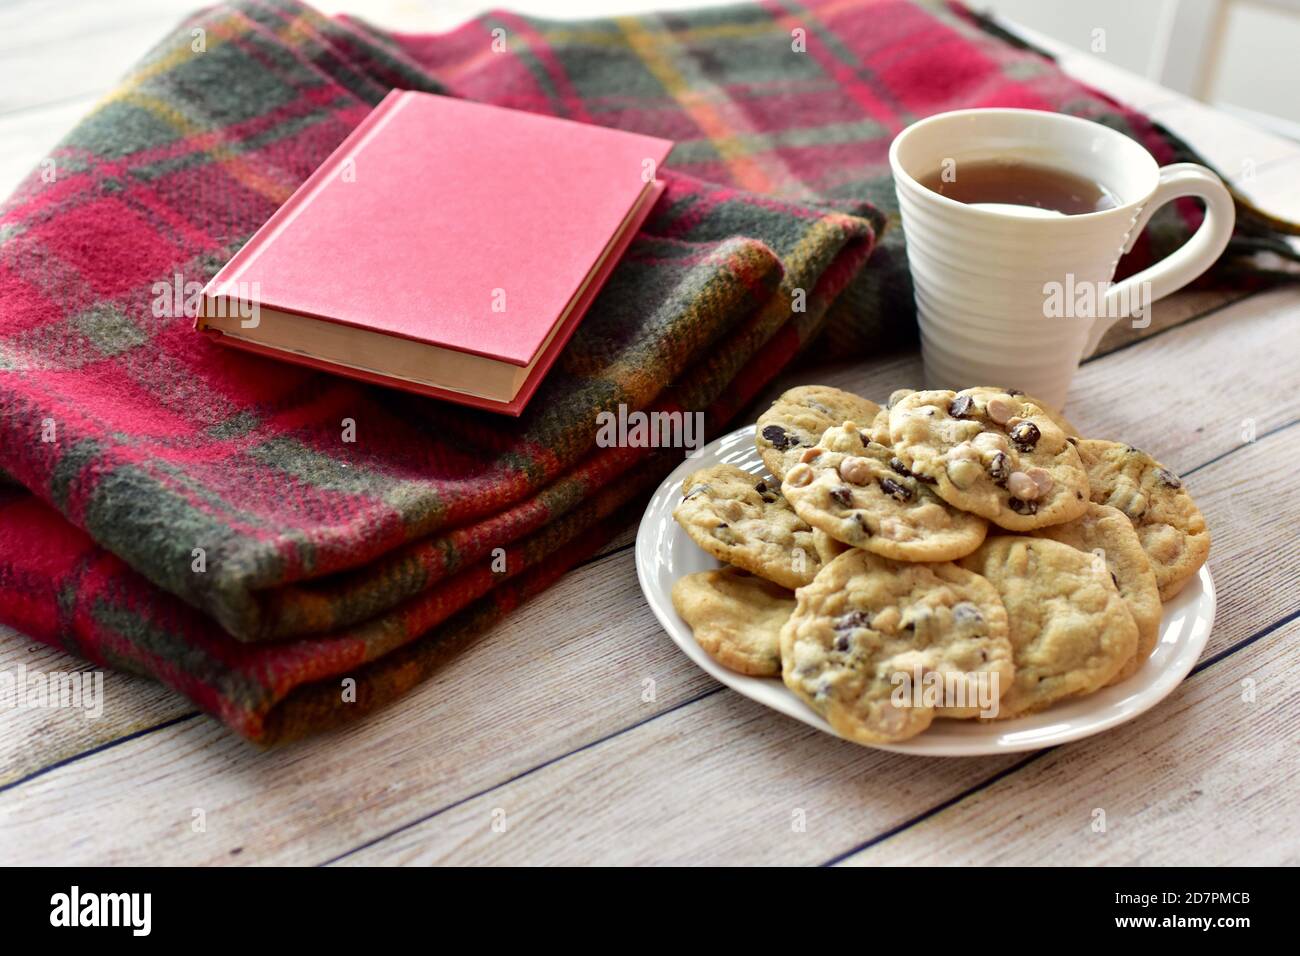 Petits gâteaux frais et chauds faits maison pour se détendre et déguster avec le thé et bon livre sur le froid hiver après-midi verrouillage à la maison Banque D'Images